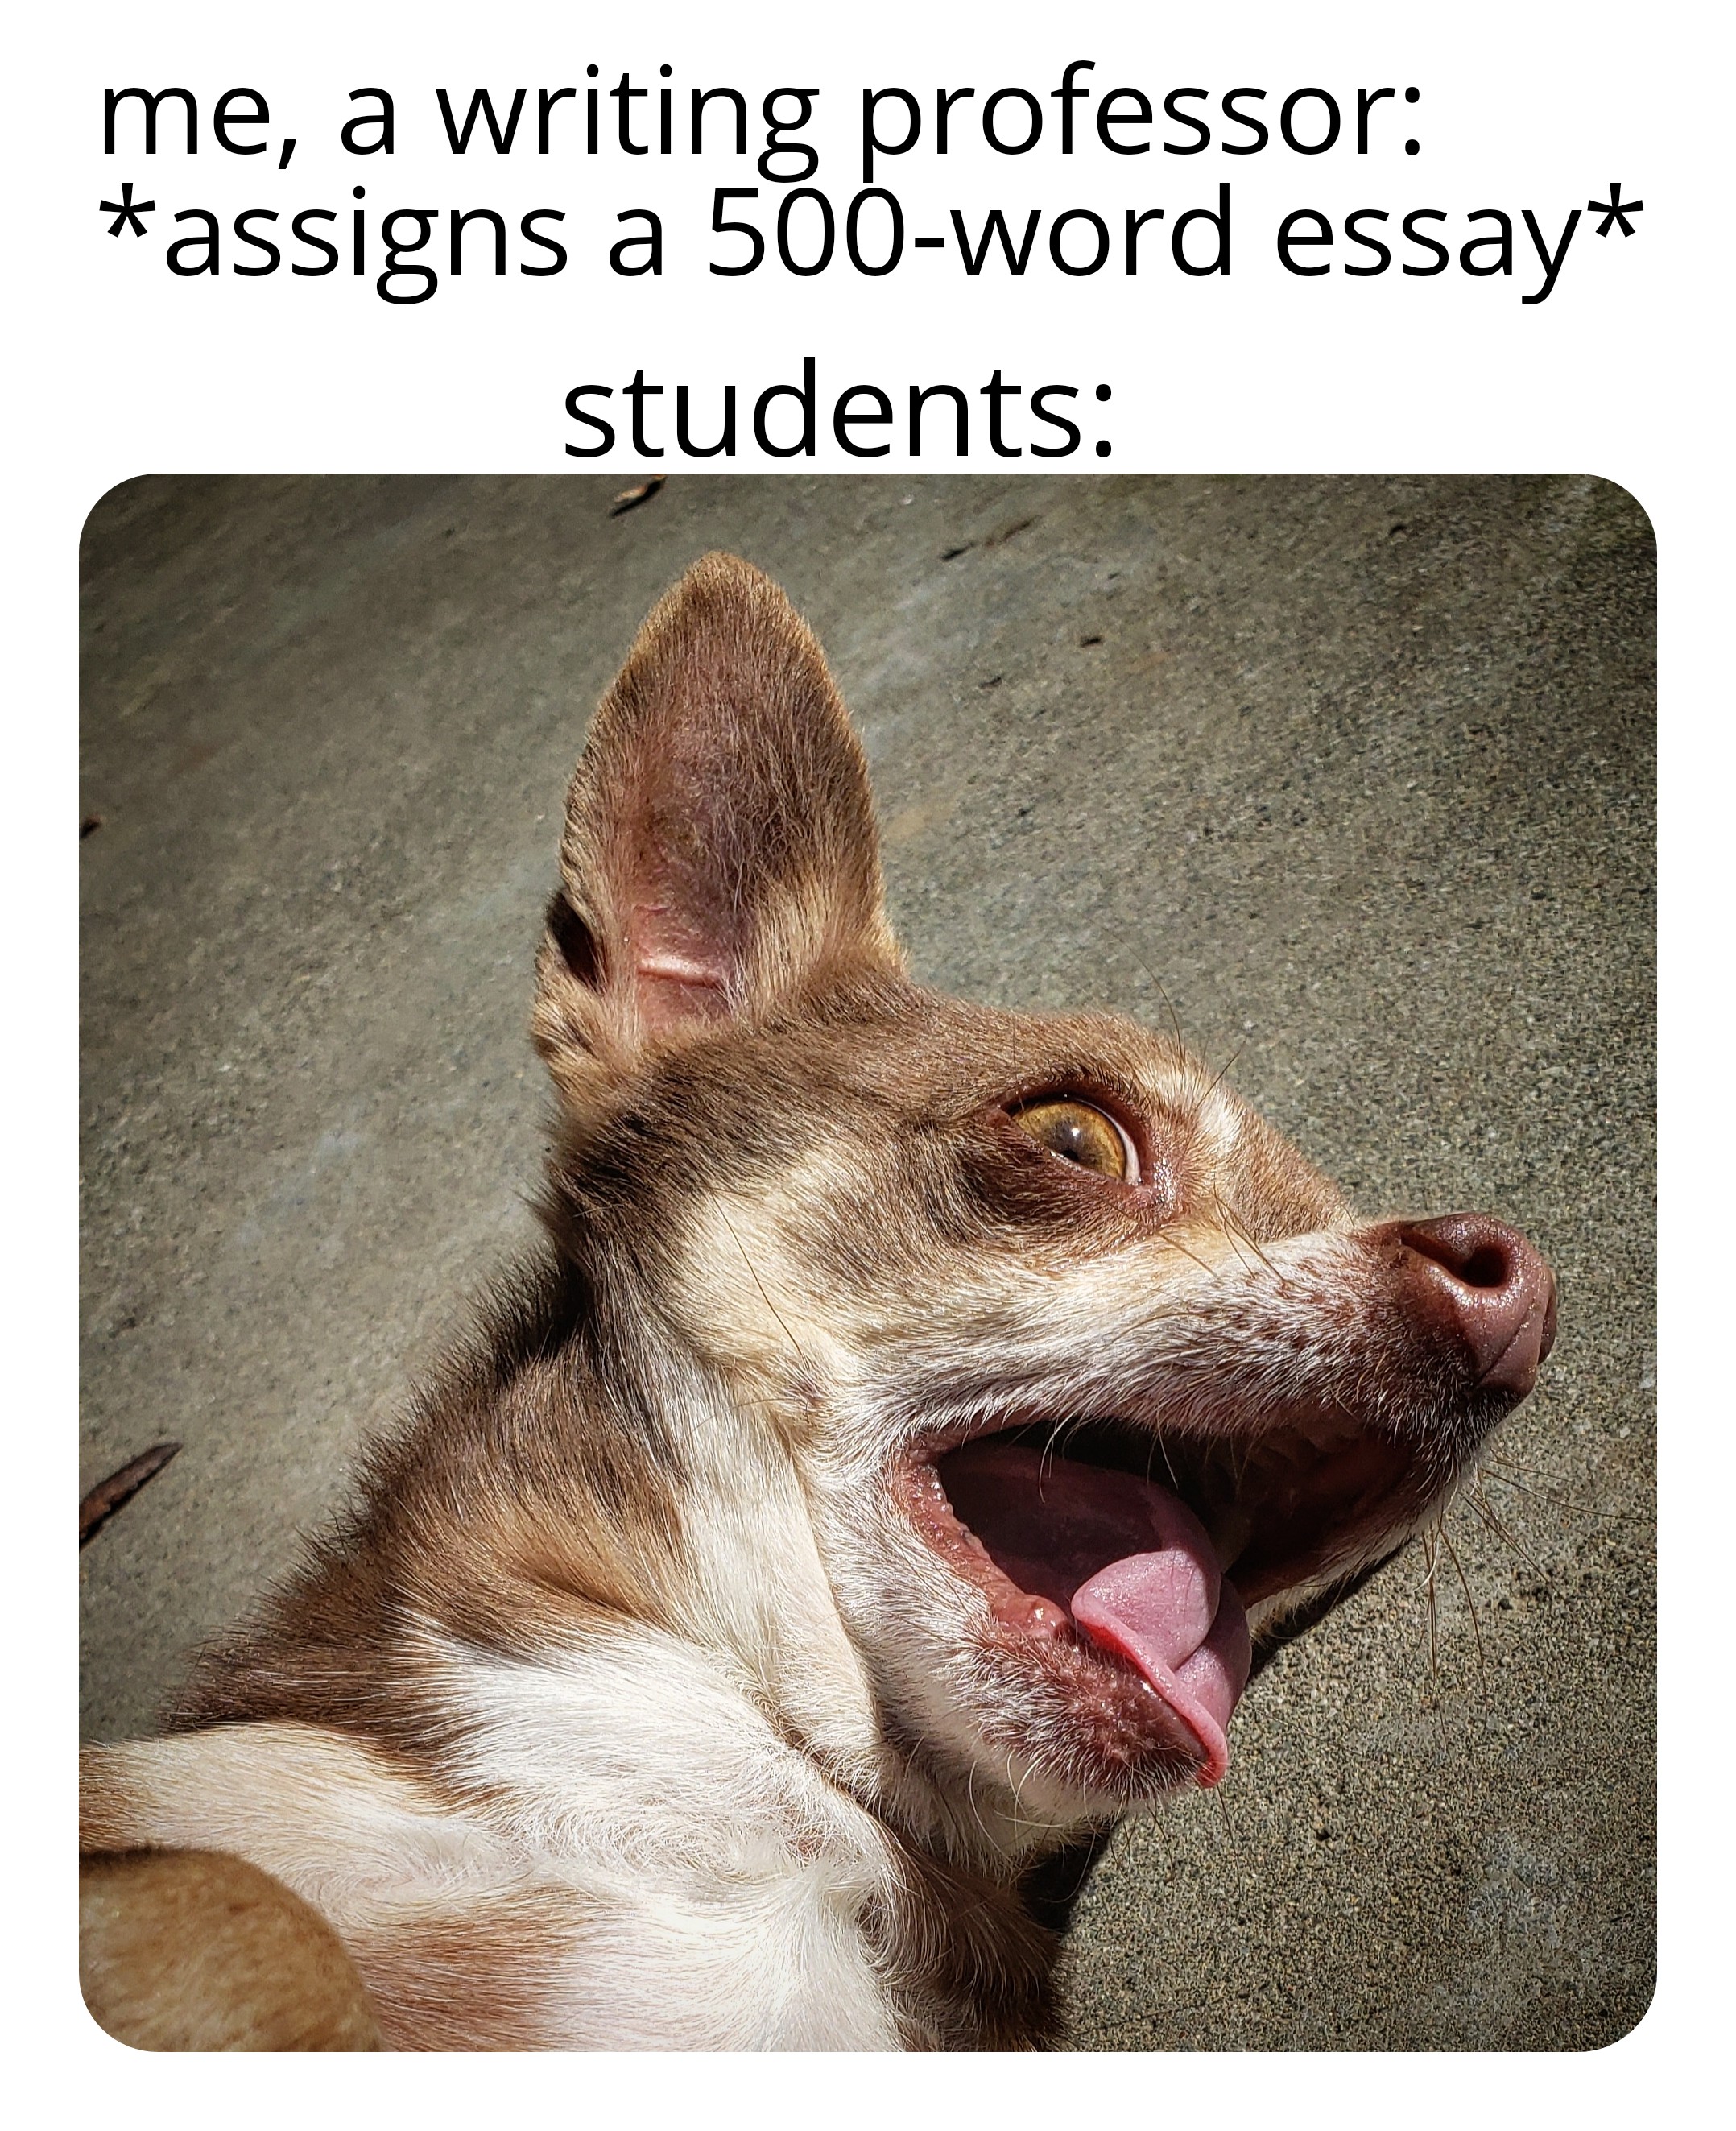 chihuahua hace una cara dramática con texto superpuesto: “yo, un profesor de escritura: *asigna ensayo de 500 palabras*; estudiantes: *cara dramática chihuahua *”